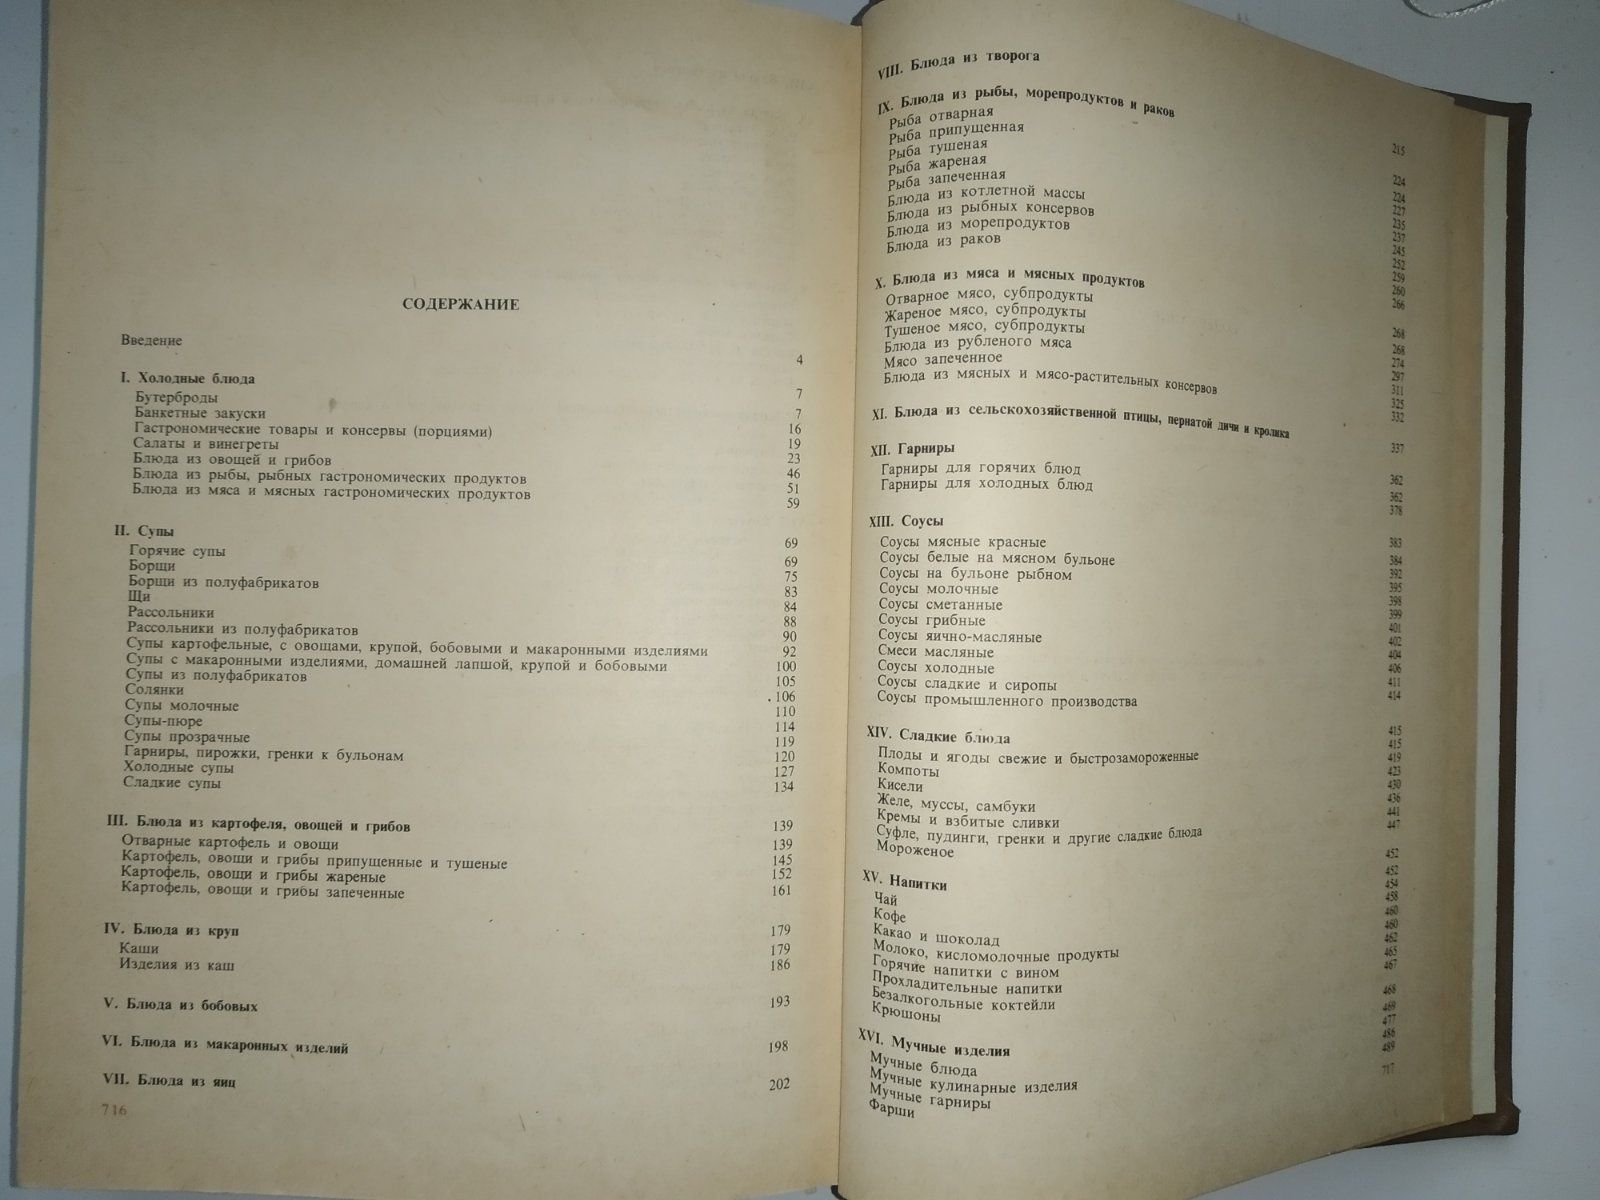 Сборник рецептур 1983 г. Технологические карты